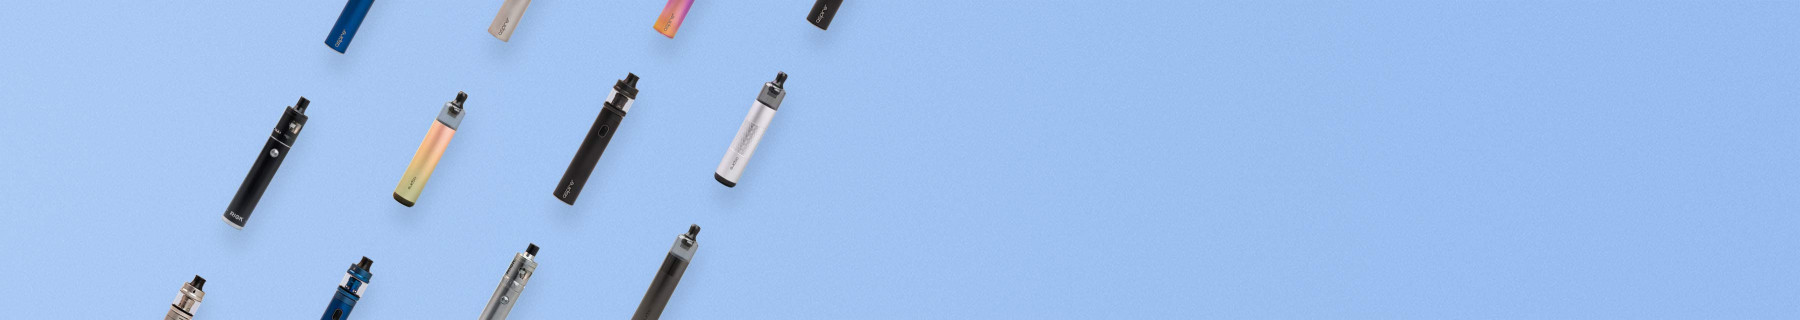 Kits e-cigarette format tube 💨